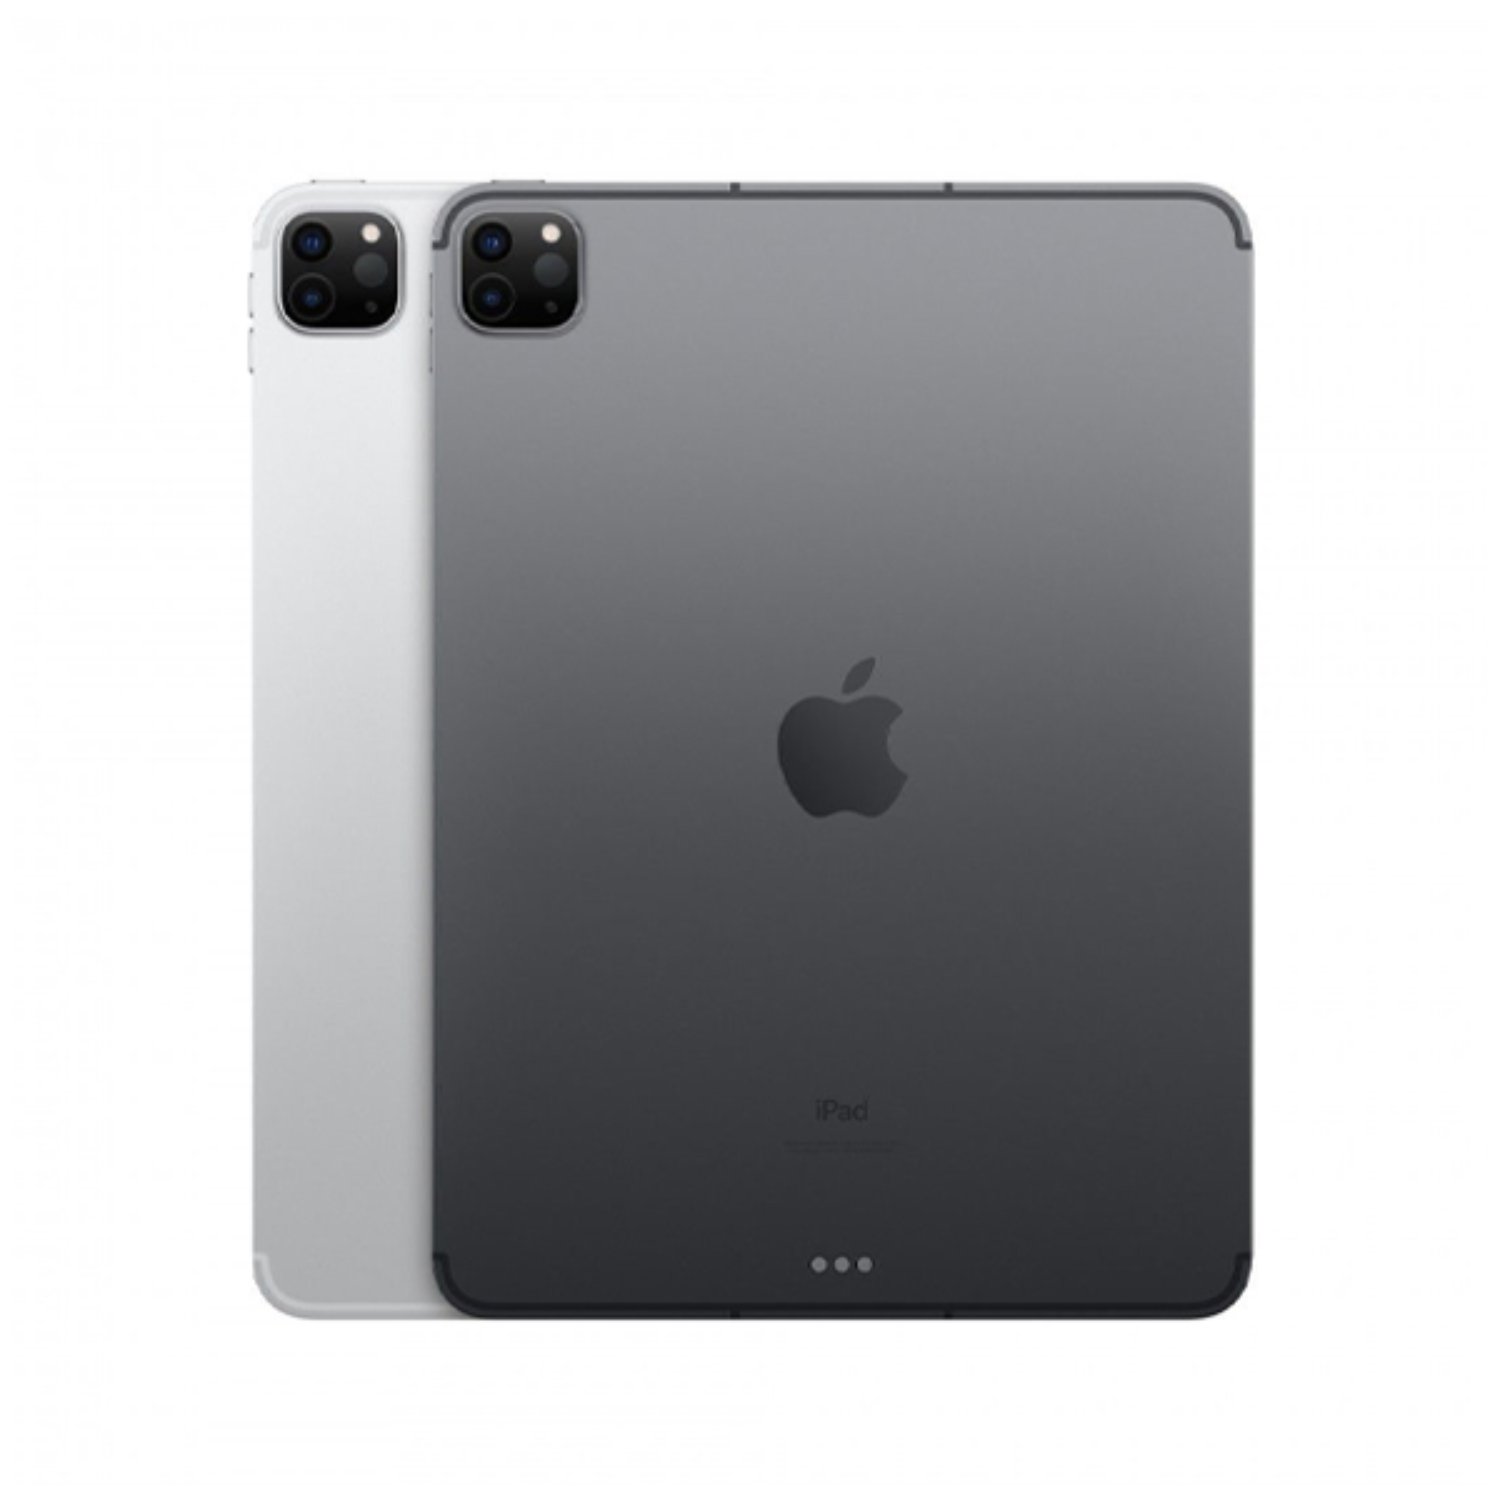 آیپد پرو 11 اینچ 2020 اپل حافظه 512گیگابایت 4G مدل Apple iPad Pro 11 inch 2th Gen 6GB-512GB 4G 2020  